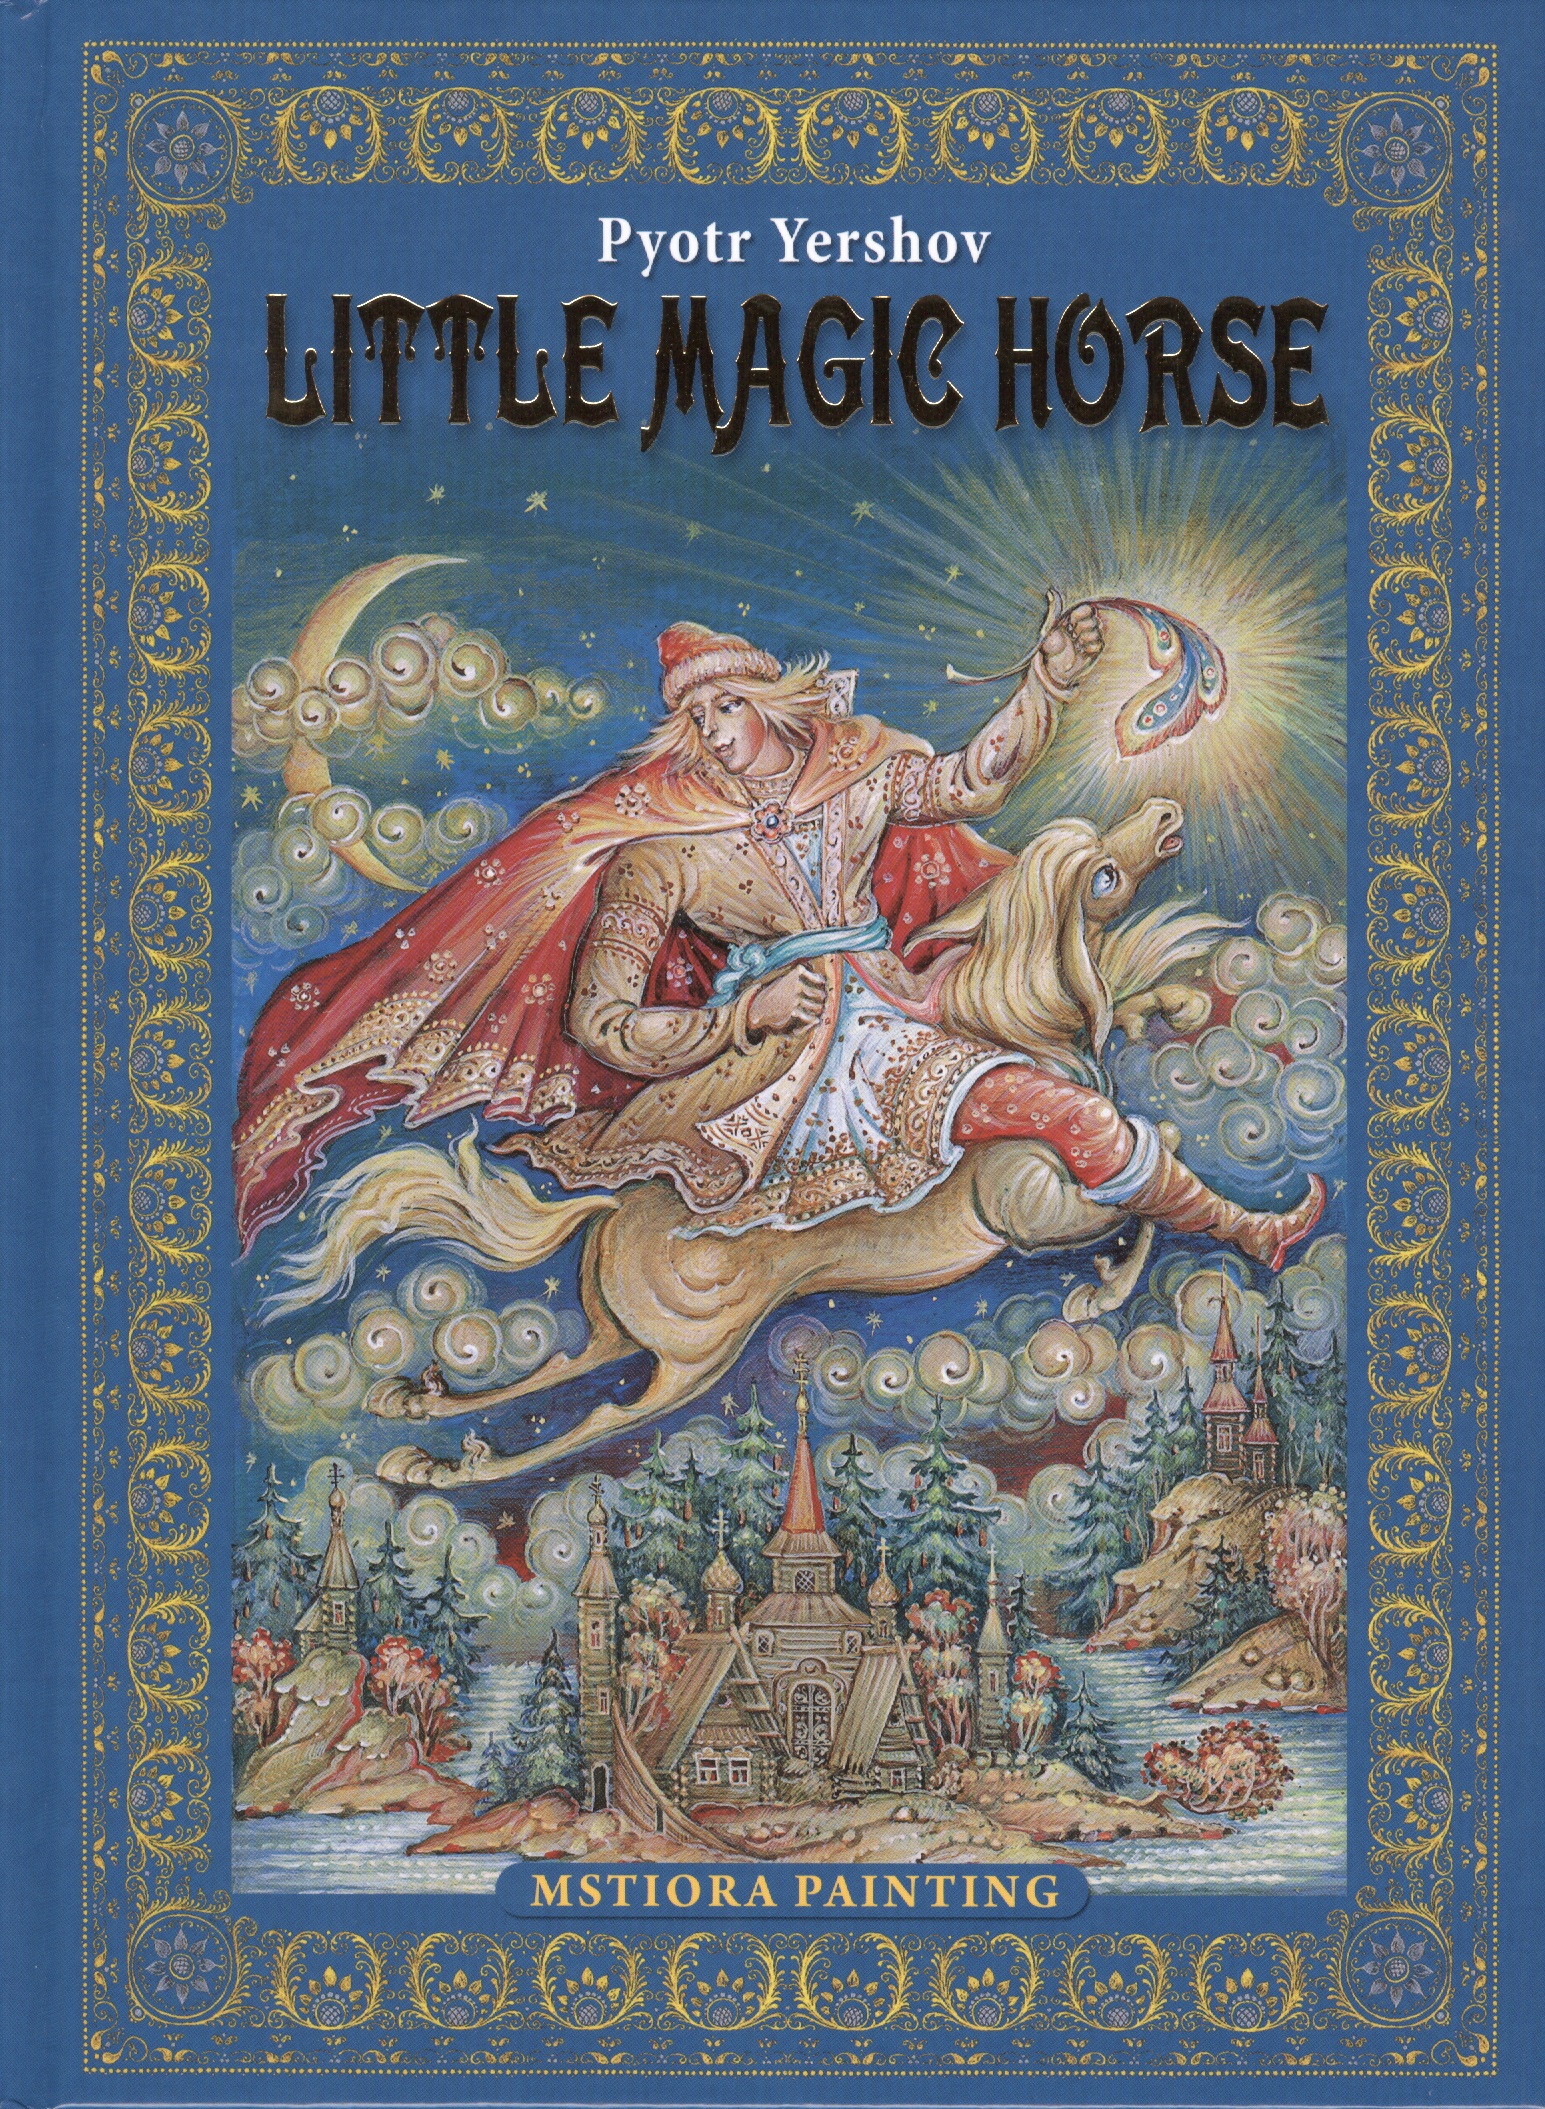 Ершов Петр Павлович Pyotr Yershov Little Magic Horse (Конек-горбунок на английском языке)